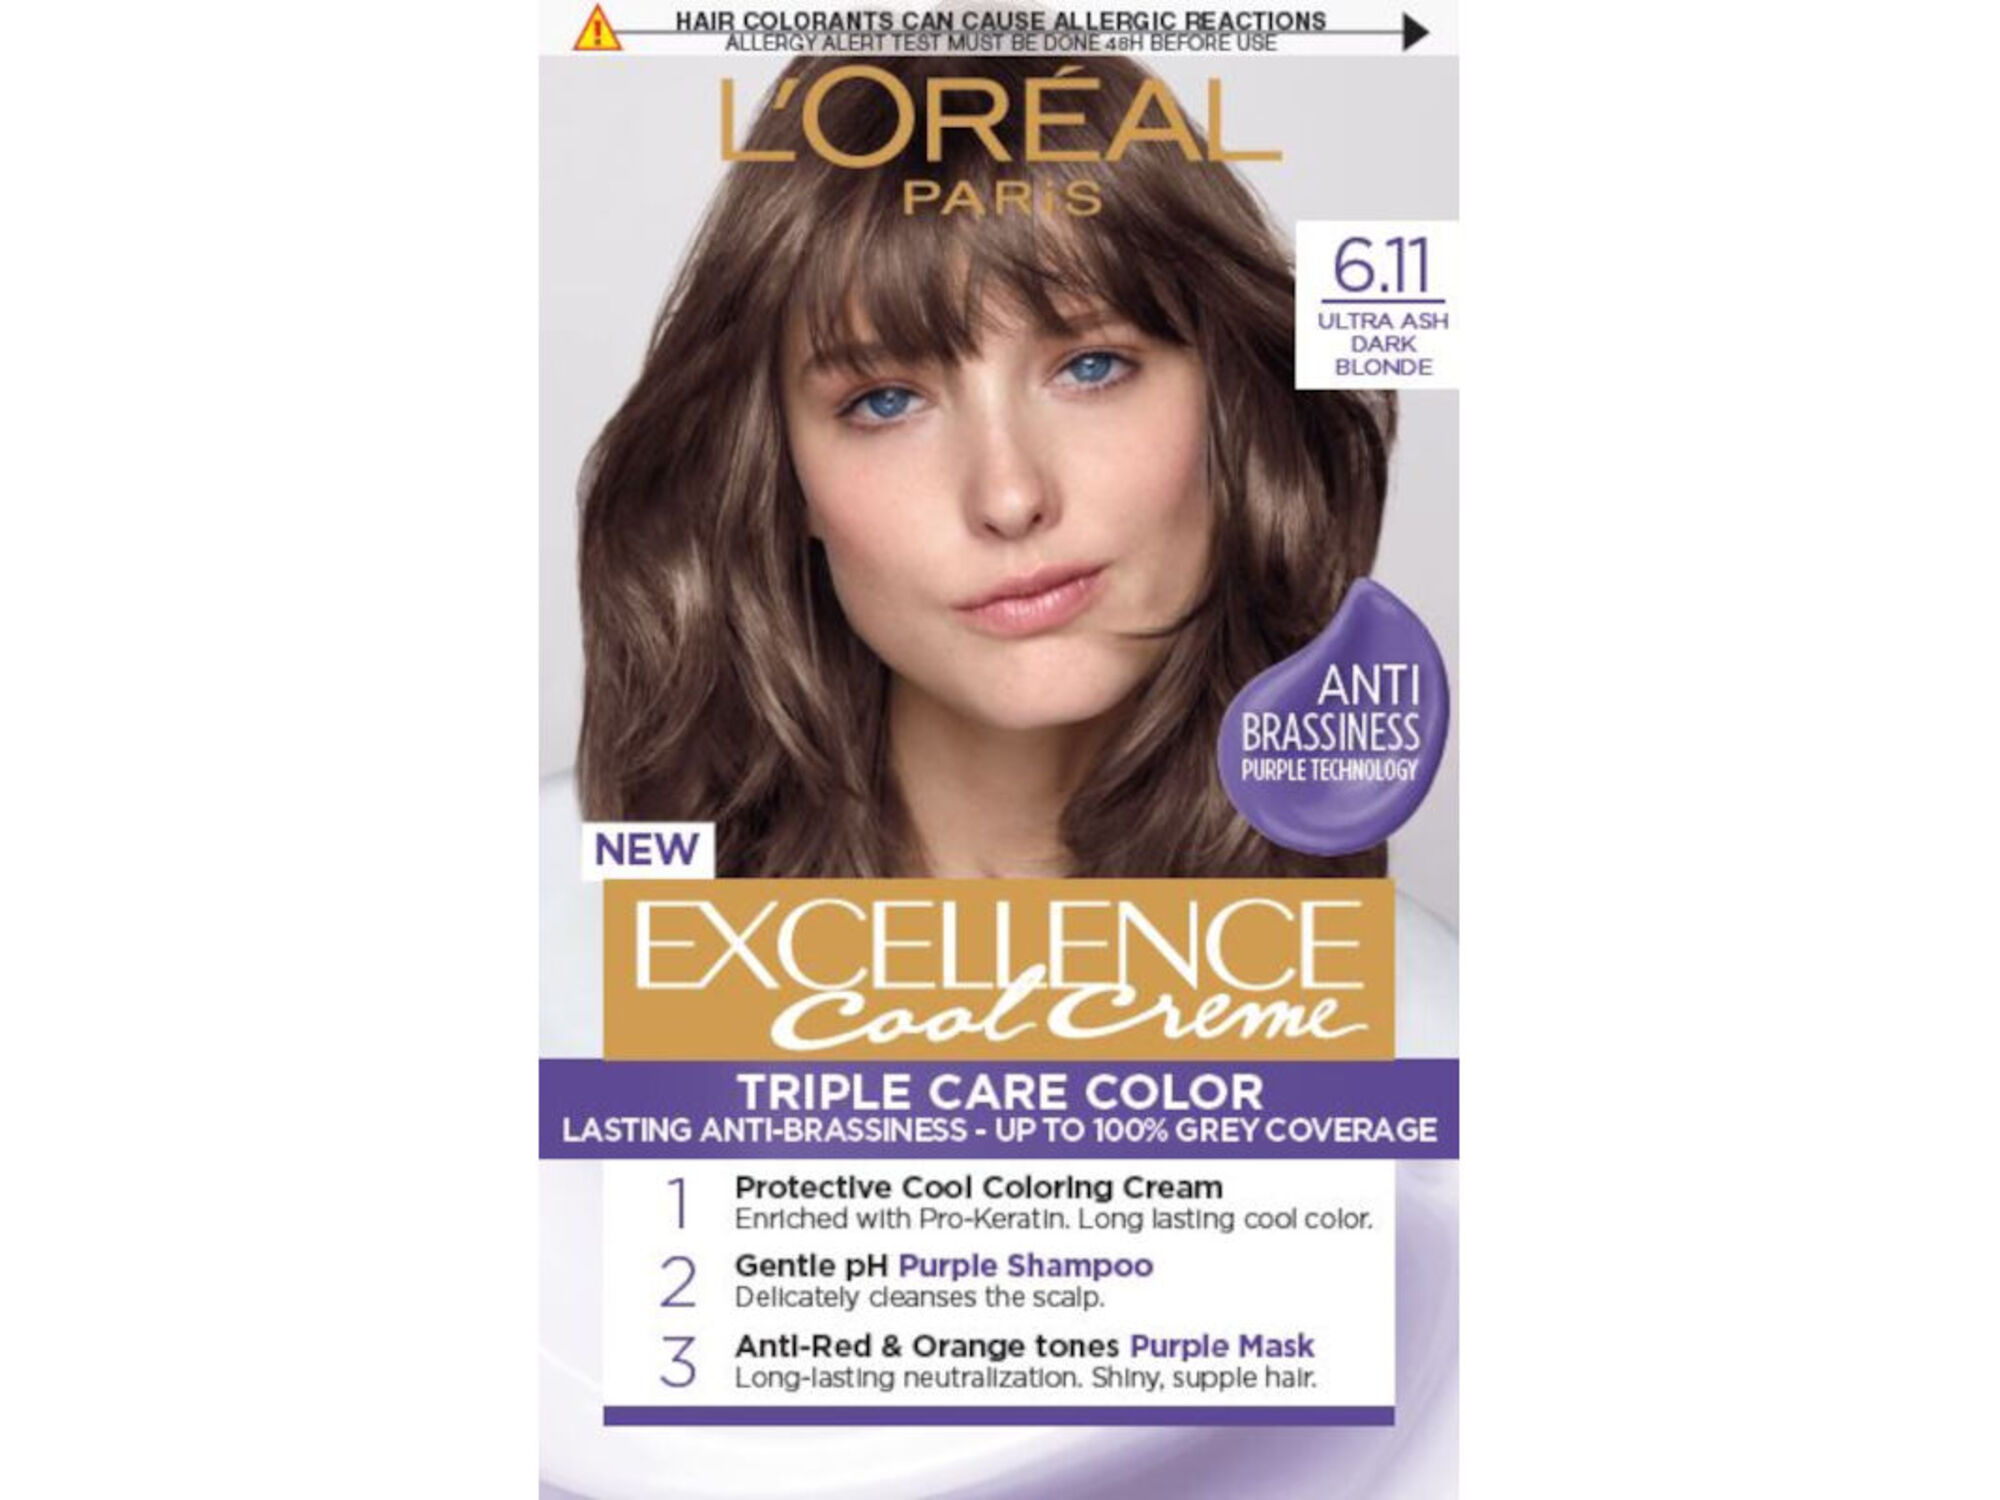 L'Oreal Paris Excellence Creme Permanent Hair Color, 9.1 Light Ash Blonde - wide 1